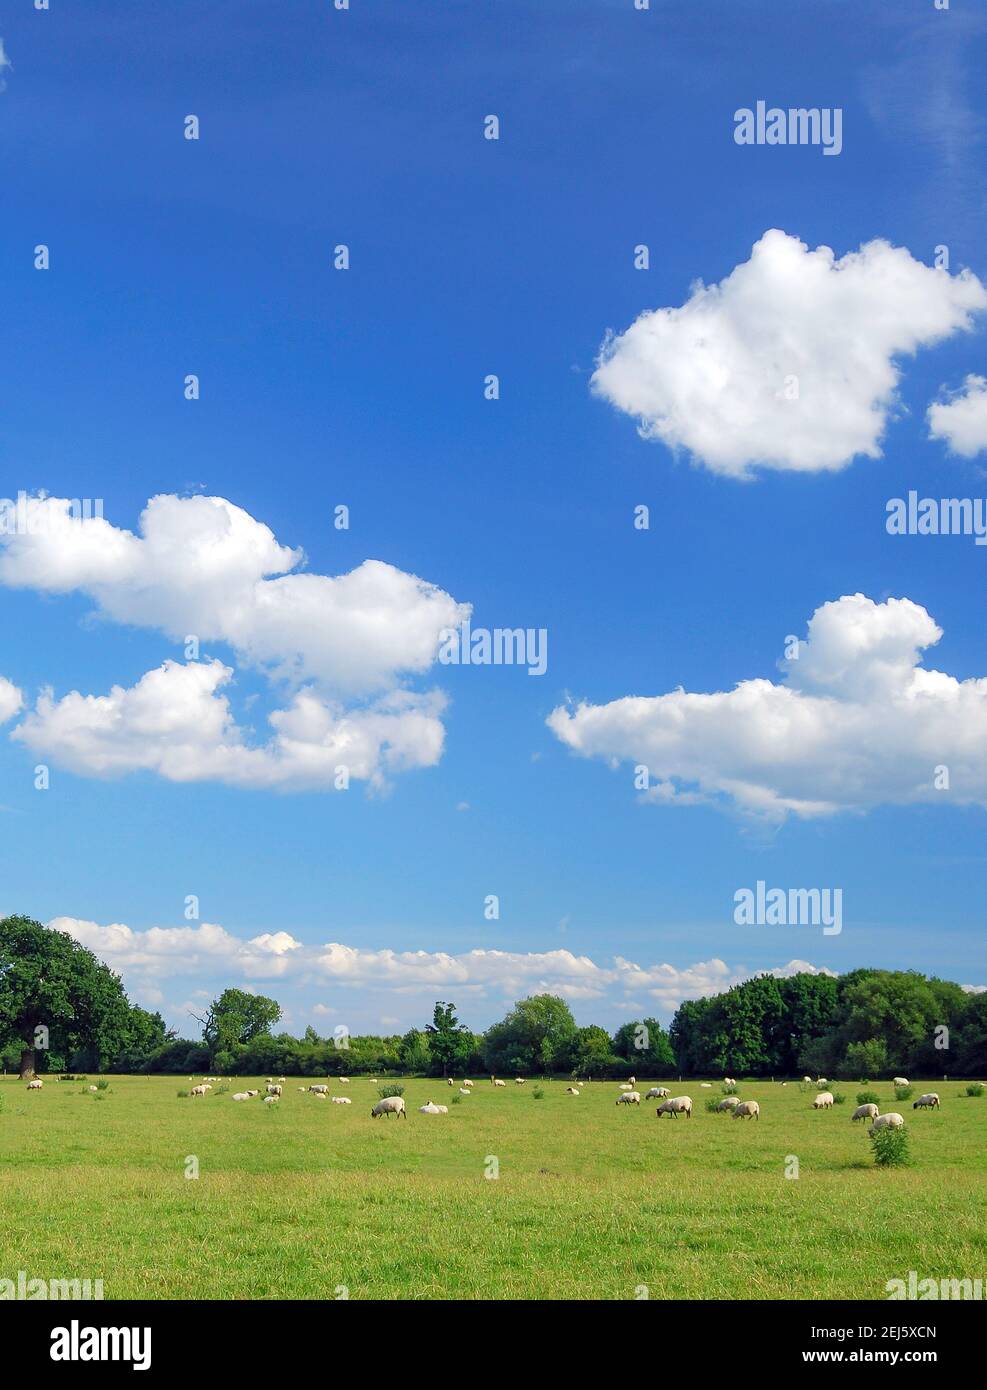 Moutons dans le champ, Dorney, Buckinghamshire, Angleterre, Royaume-Uni Banque D'Images